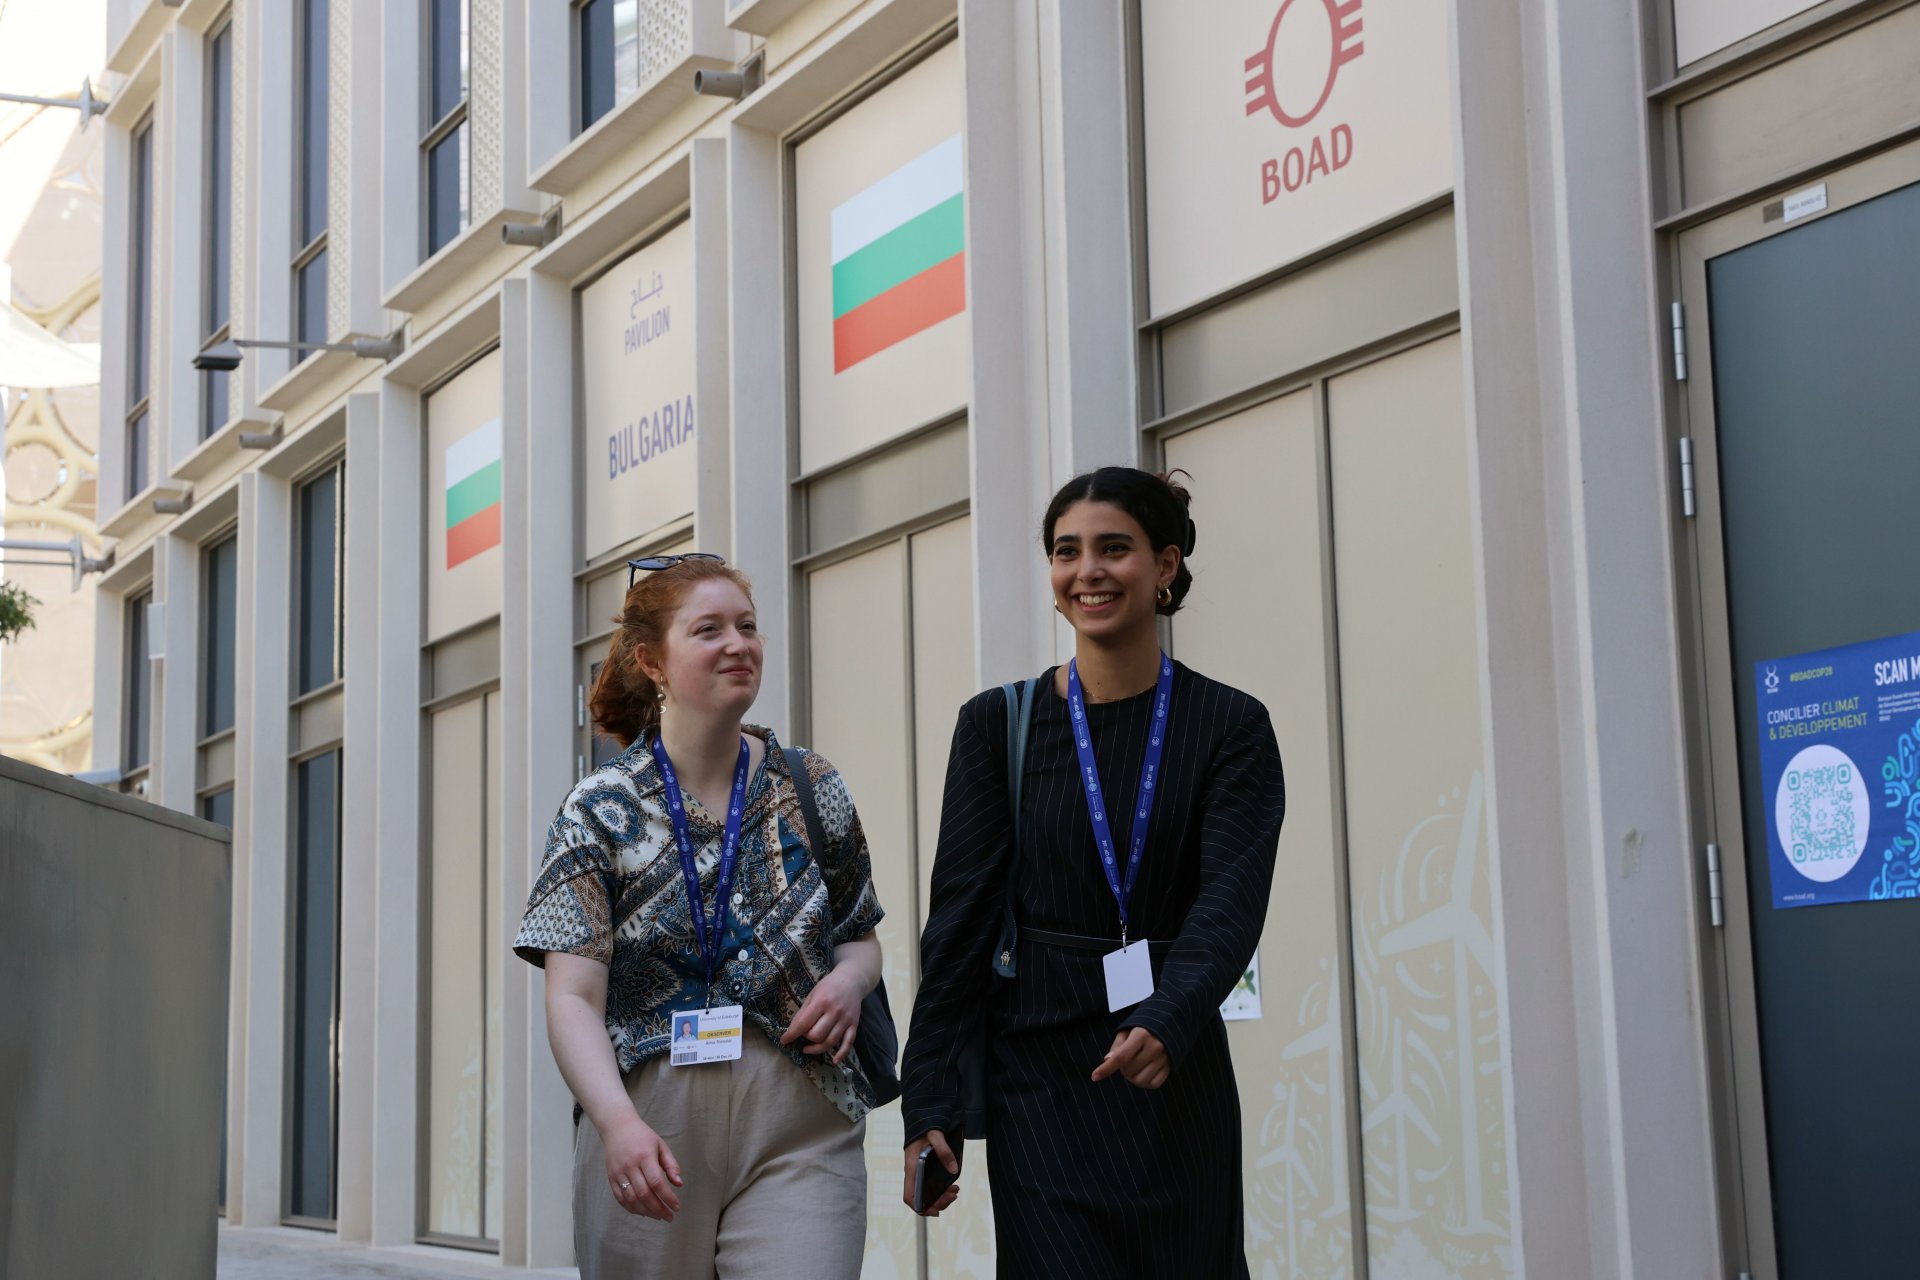 България за първи път участва с павилион на годишната среща на ООН по въпросите на климата КОП28 (COP28), която започна в Дубай, Обединени арабски емирства